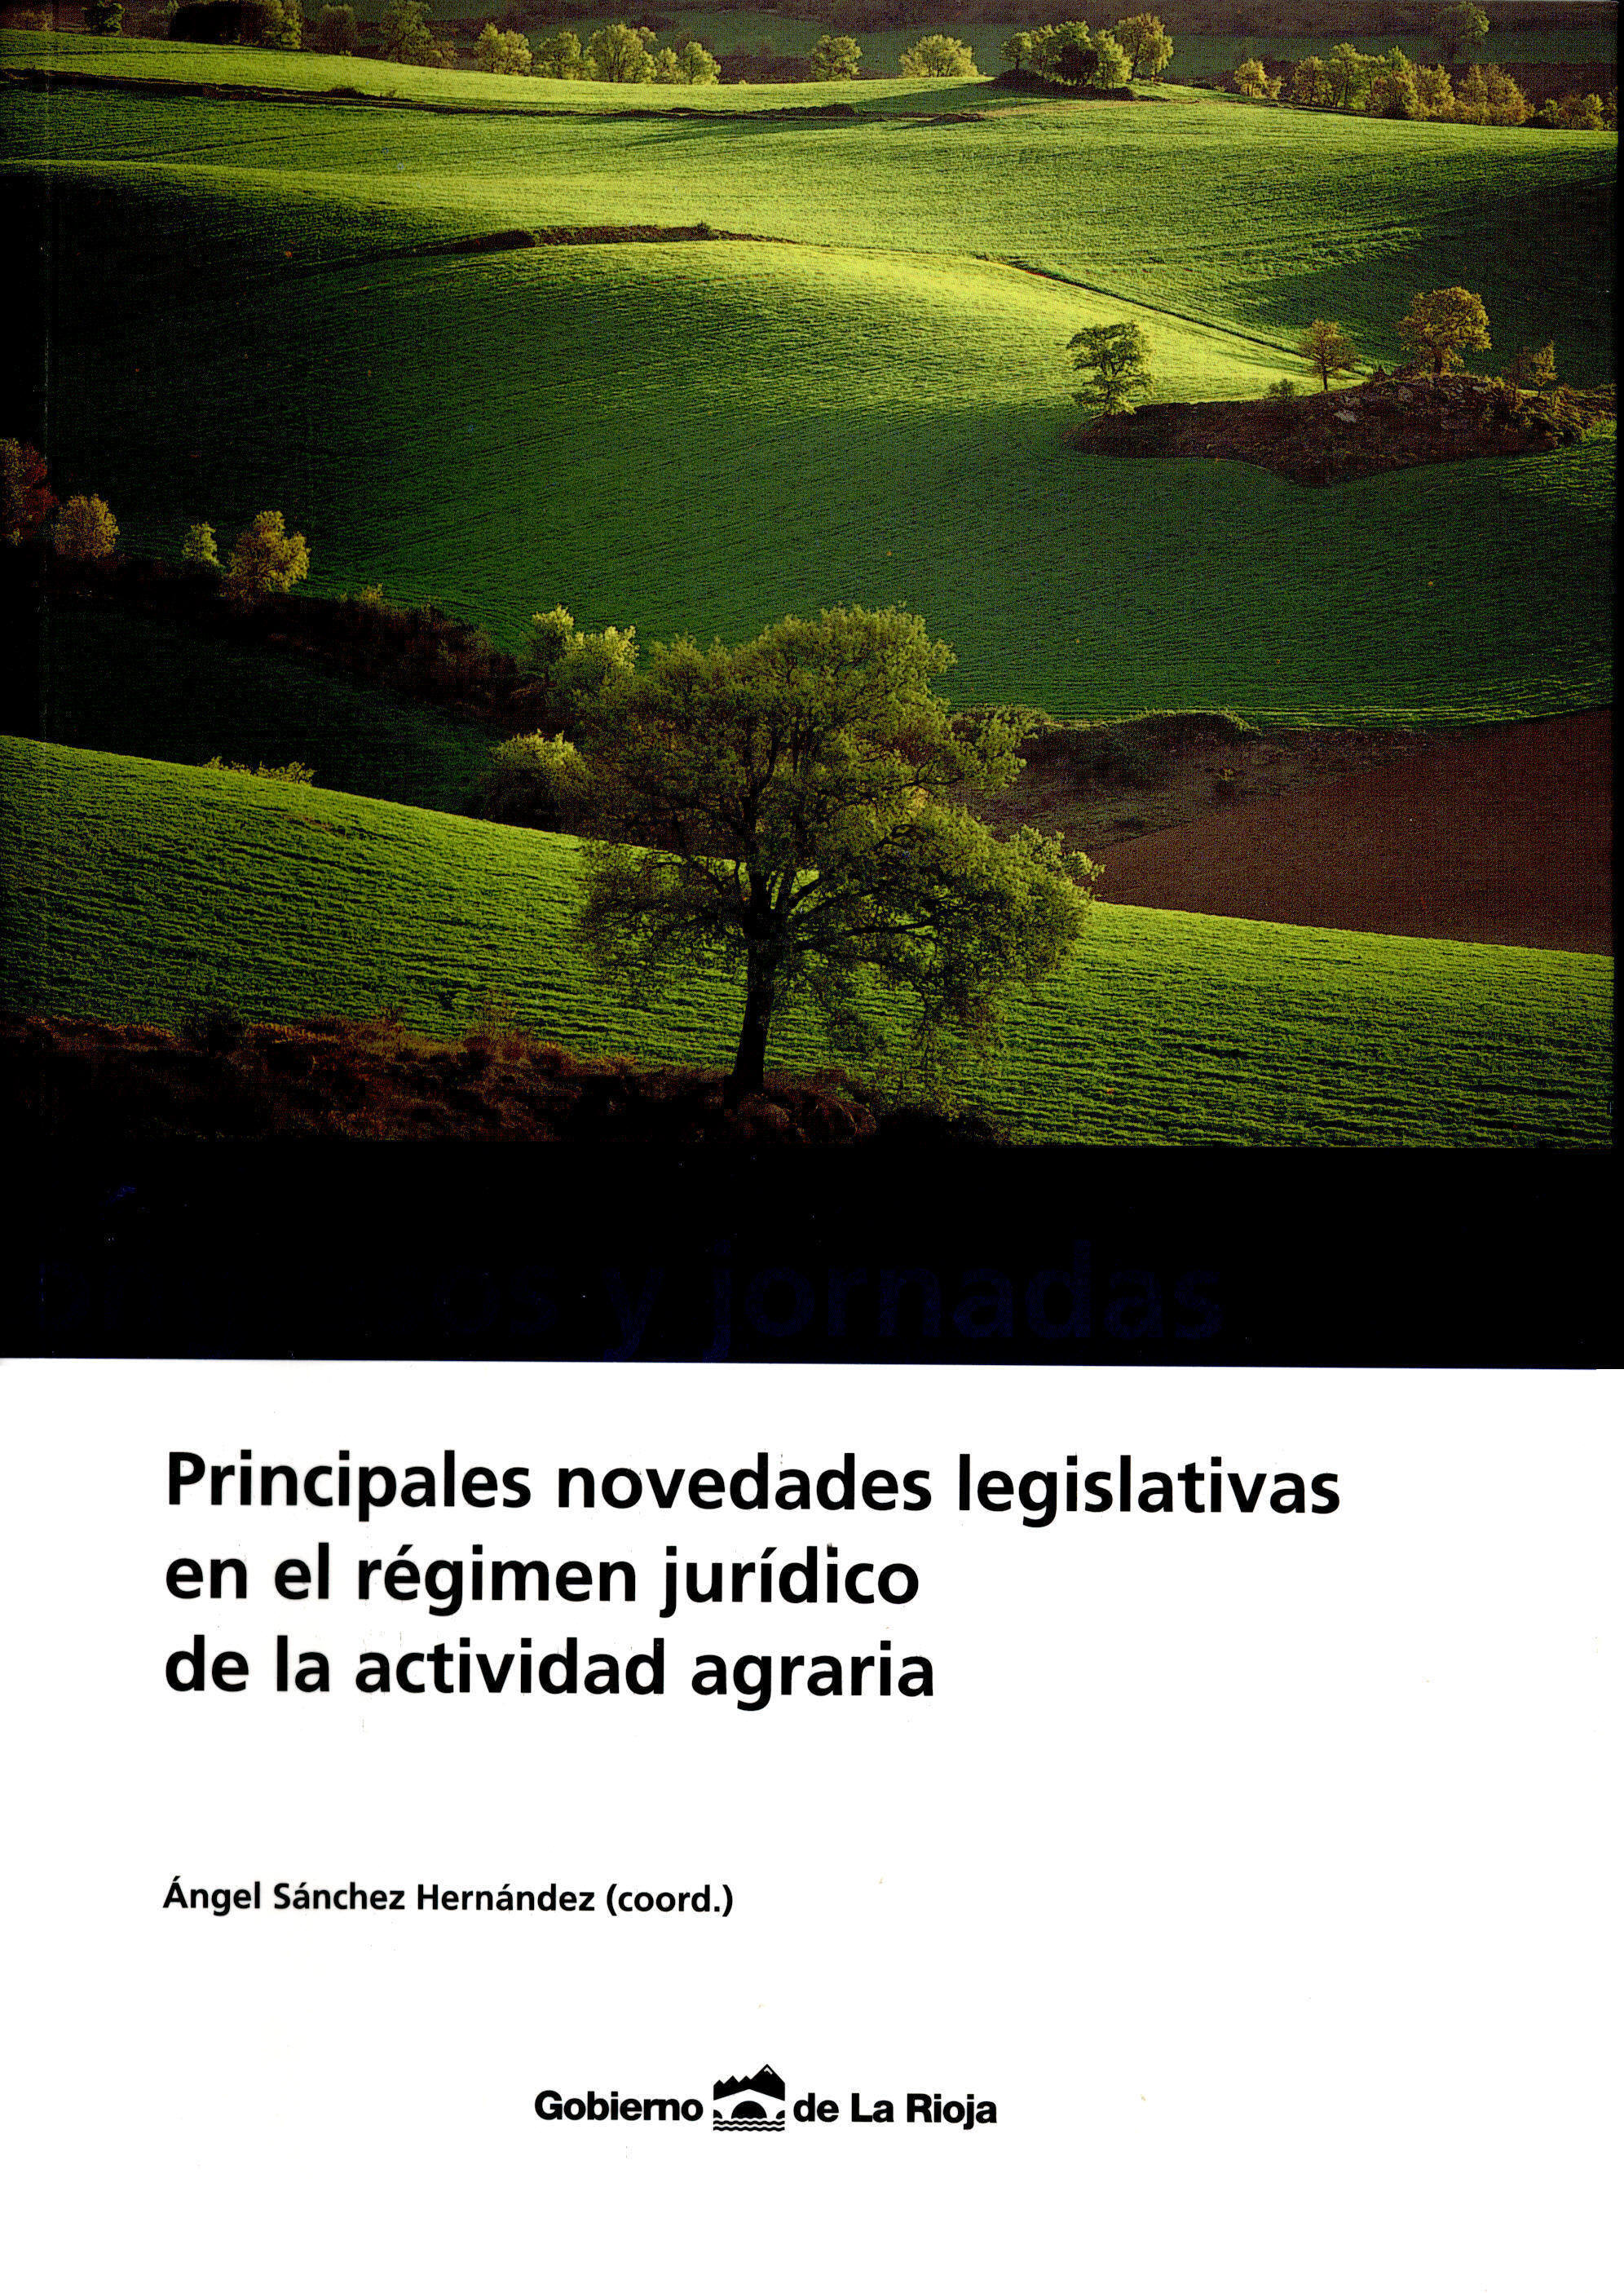 Portada de "Principales novedades legislativas en el régimen jurídico de la actividad agraria"